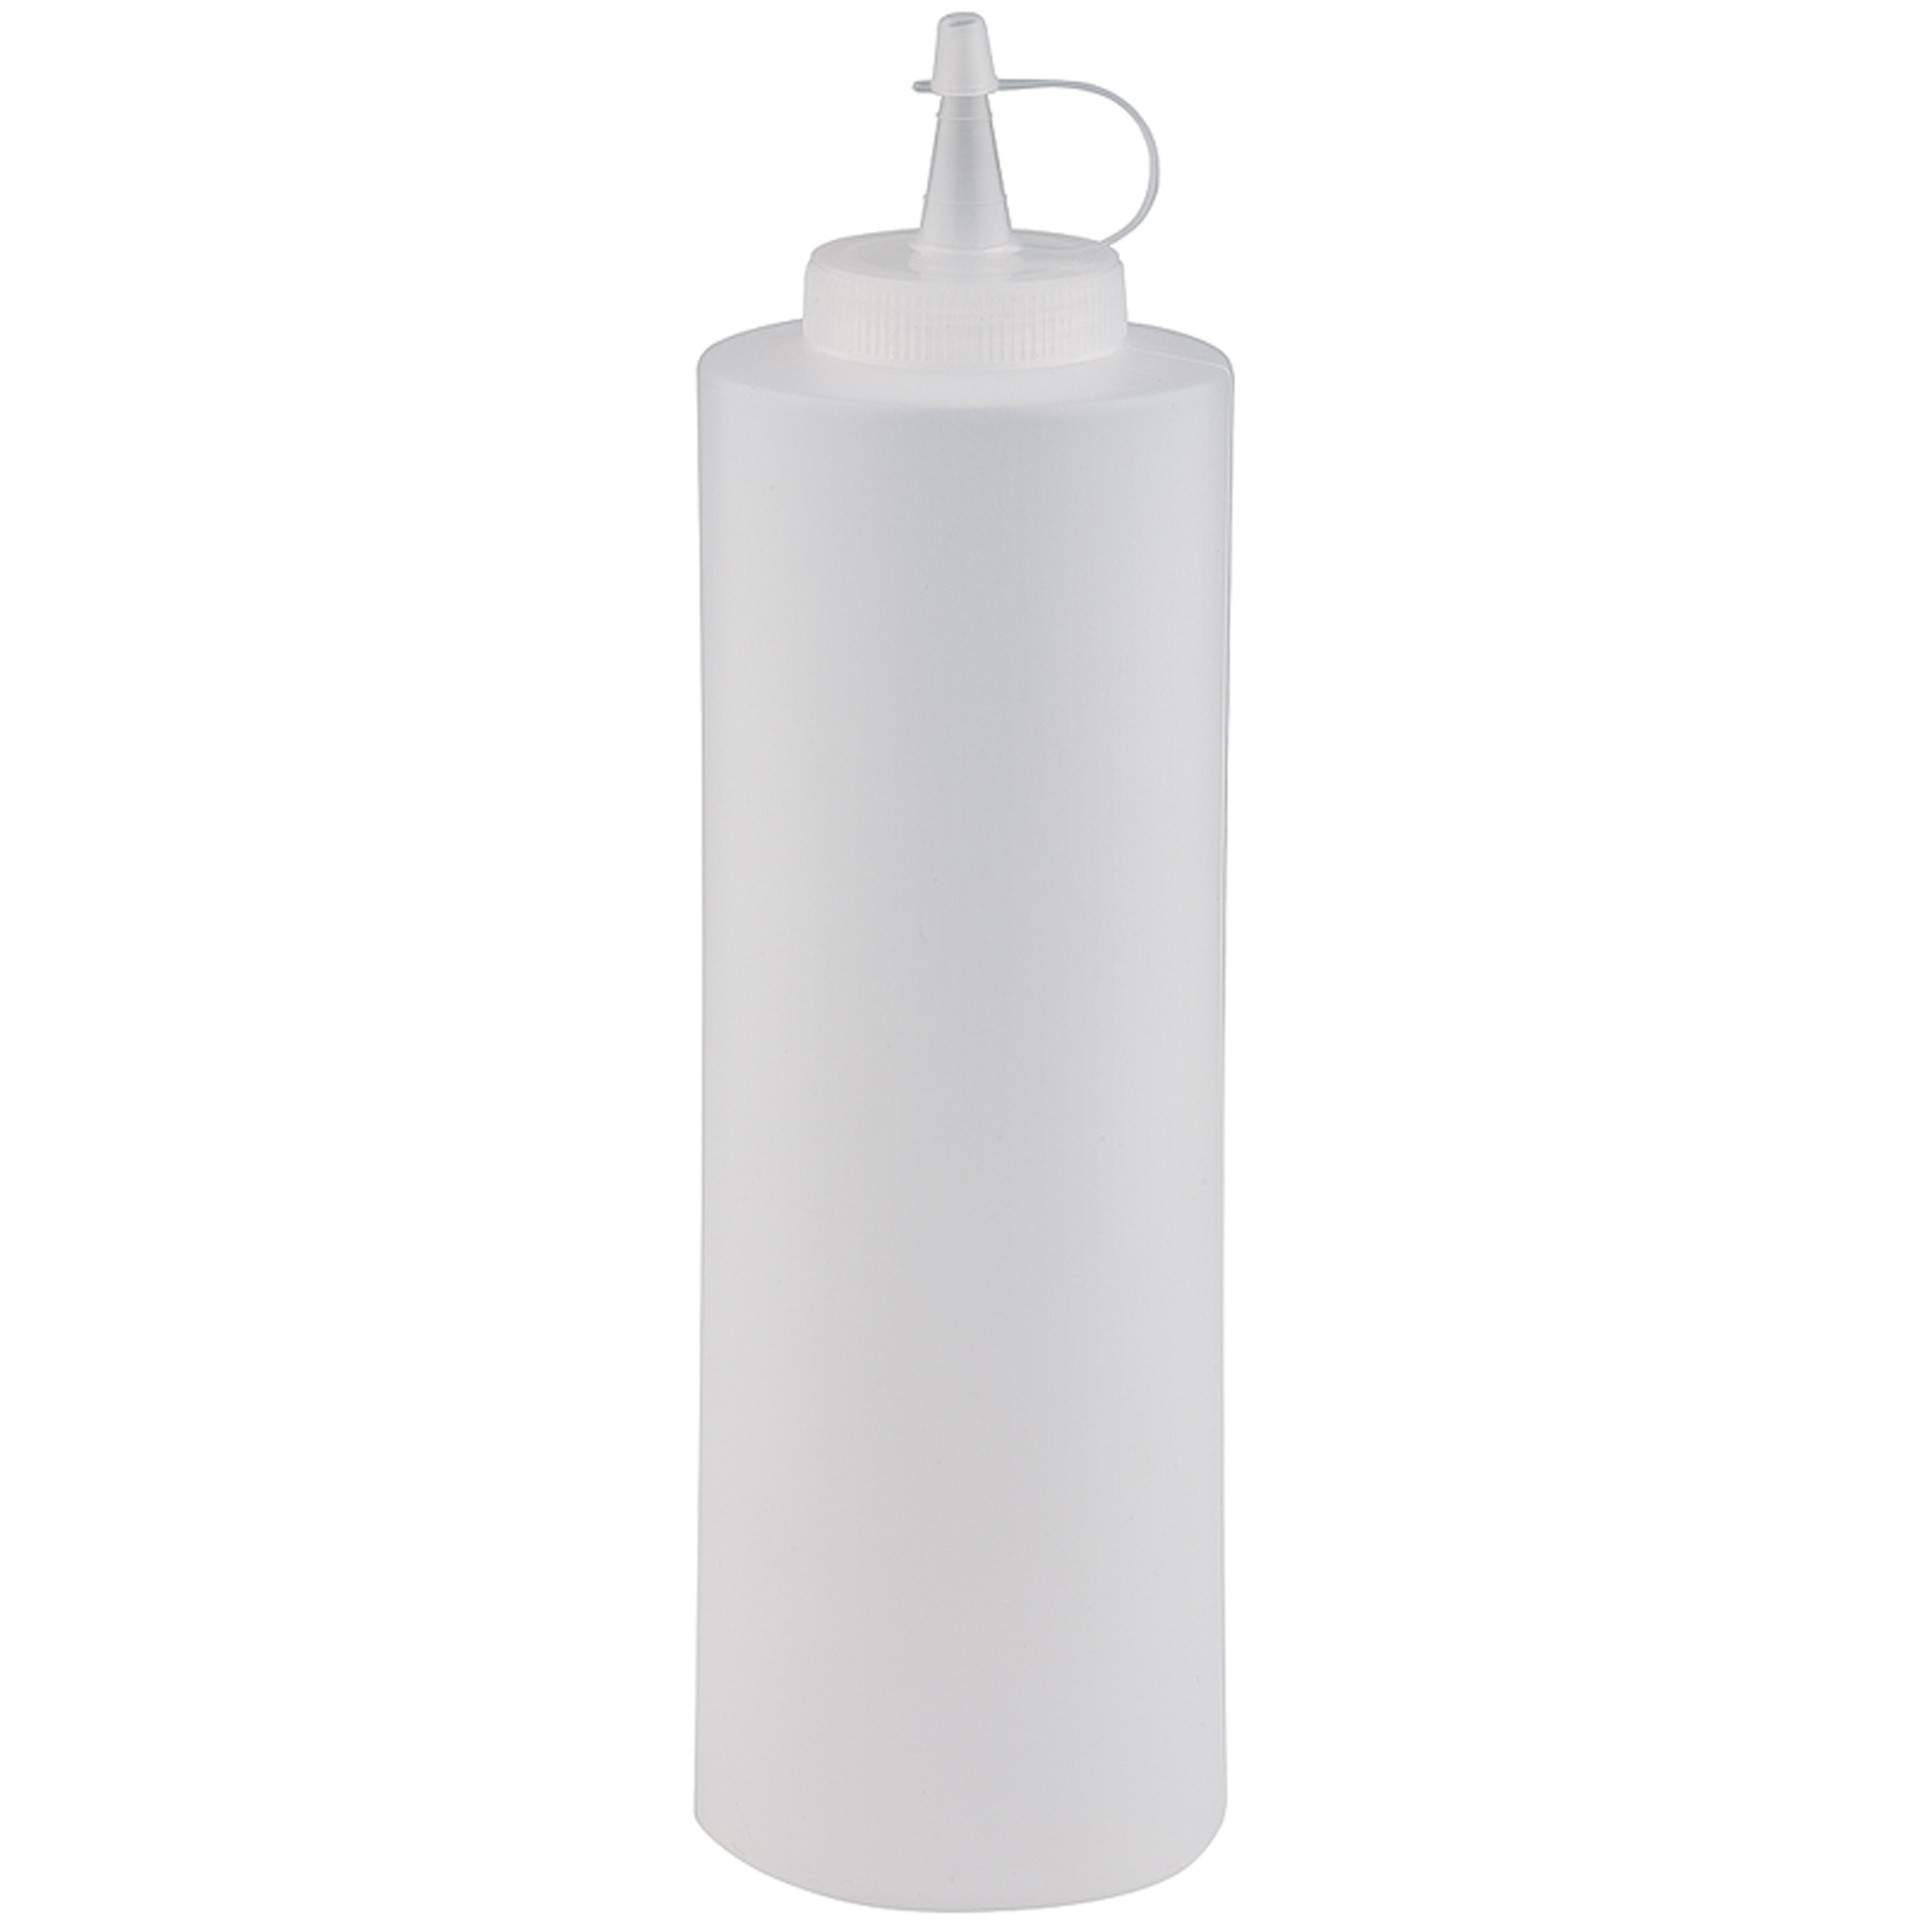 Quetschflasche - mit Verschlusskappe - weiß / klar - Abm. 25,0 cm - Ø 6,5 cm - Inhalt 0,65 l - Polyethylen - 93157-B